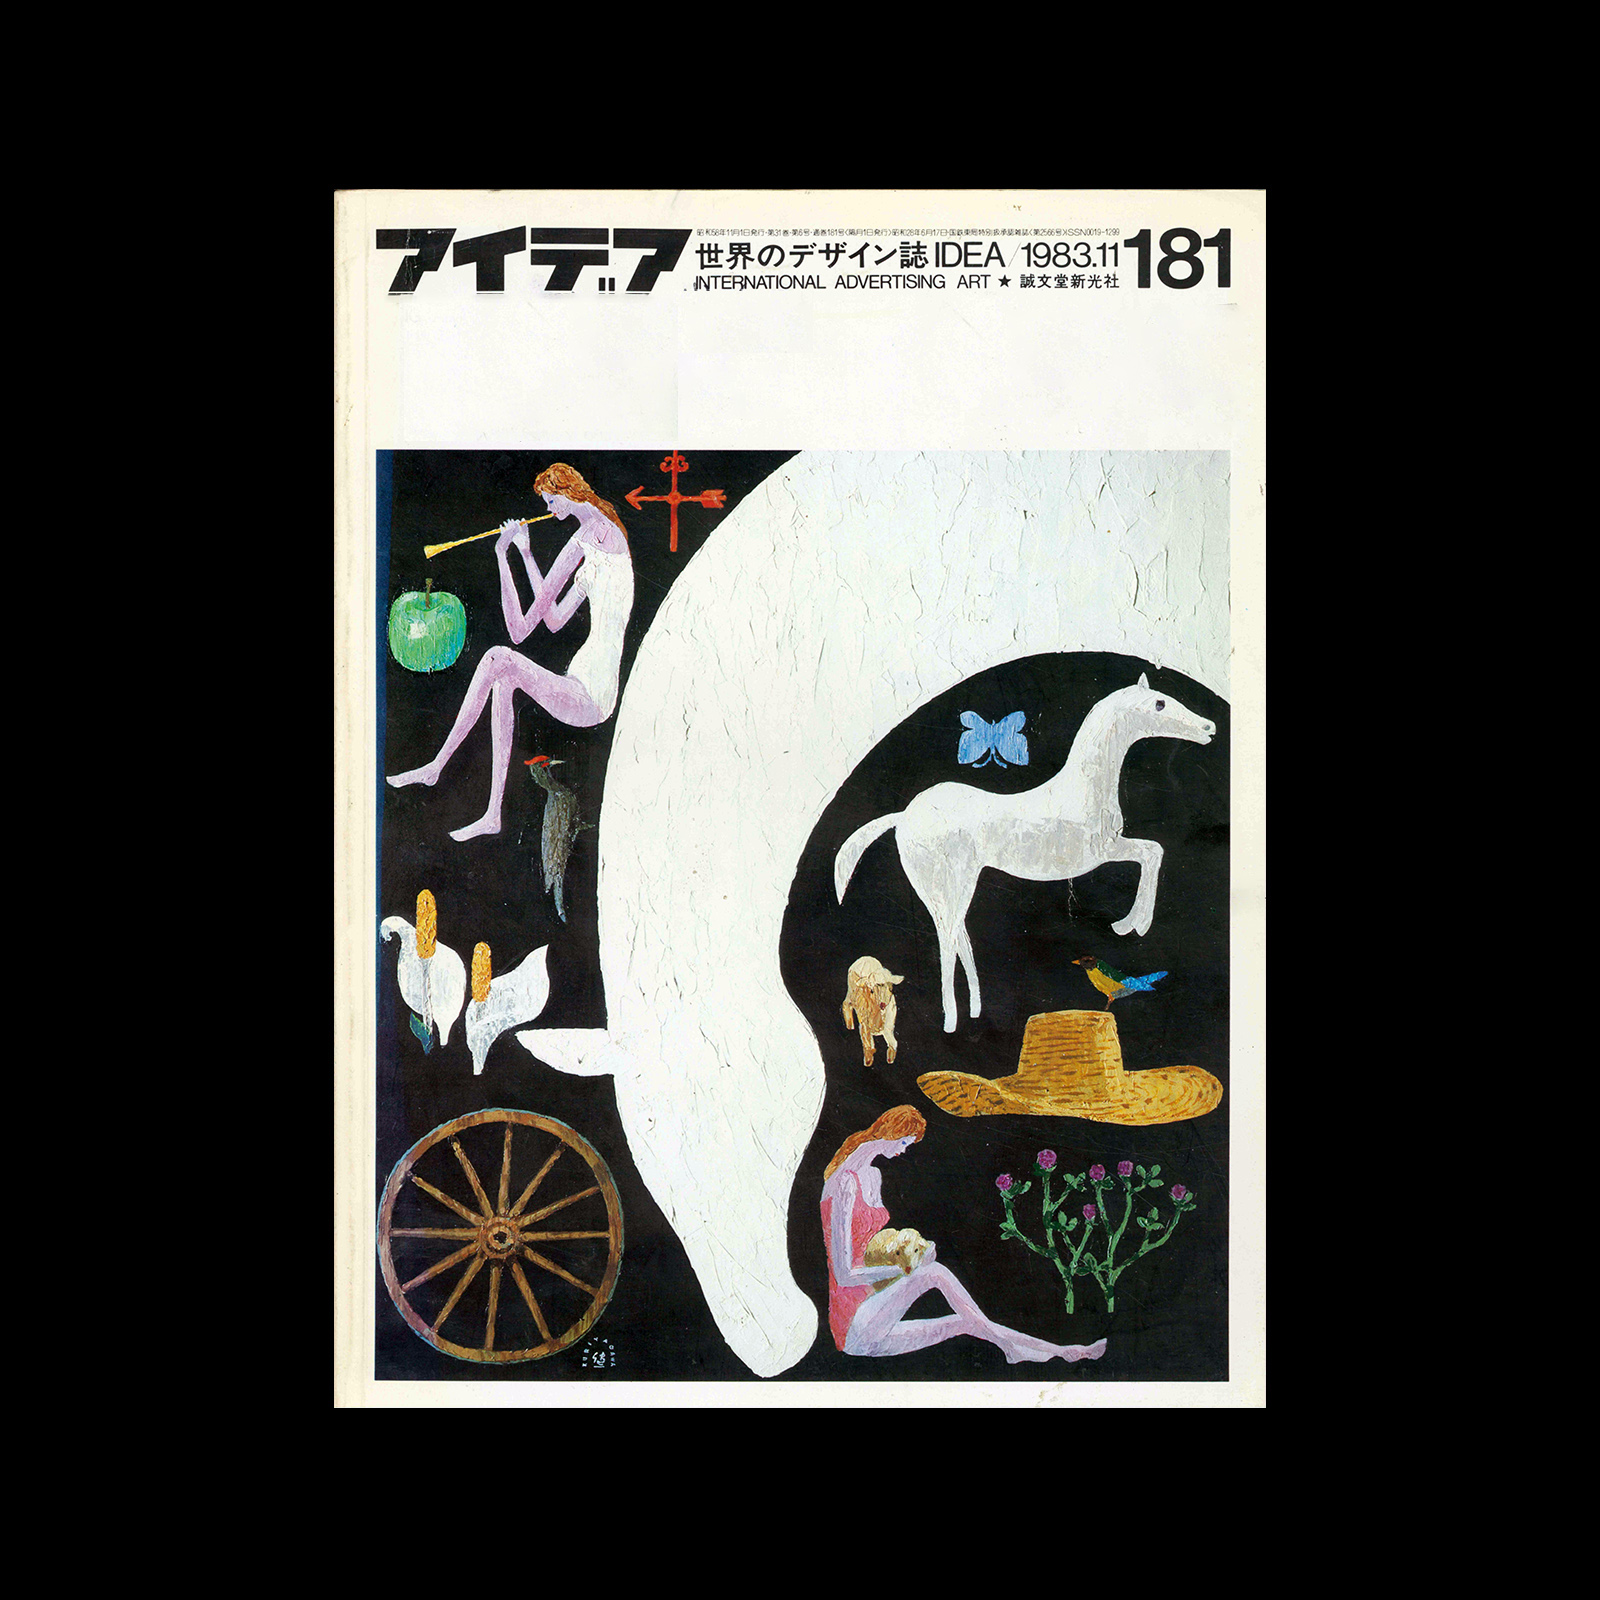 Idea 181, 1983-11. Cover design by Kenichi Kuriyagawa